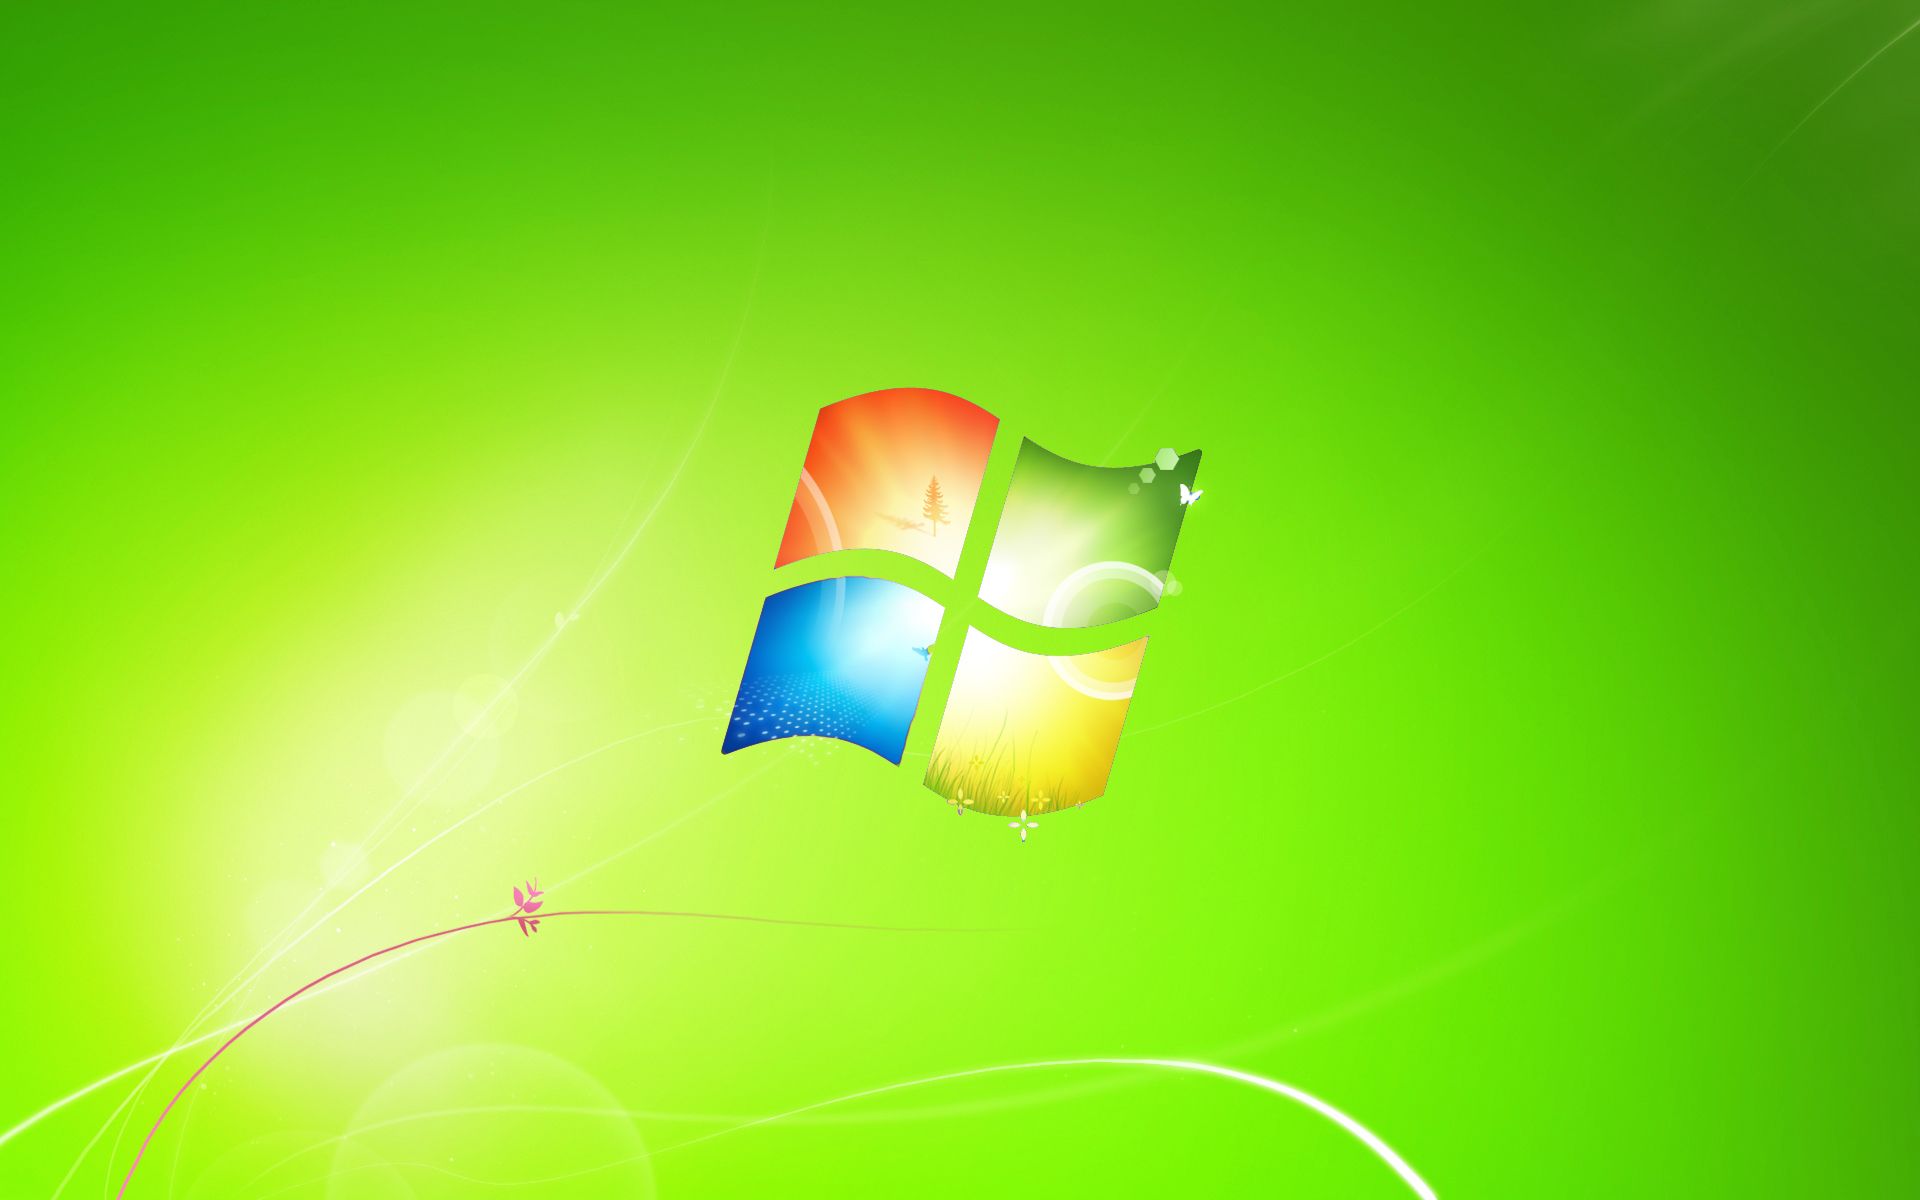 Hãy thưởng thức vẻ đẹp tươi tắn và bình yên của hình nền Windows 7 màu xanh lá cây, đem đến cho bạn cảm giác thư thái trong mỗi lần làm việc trên máy tính.